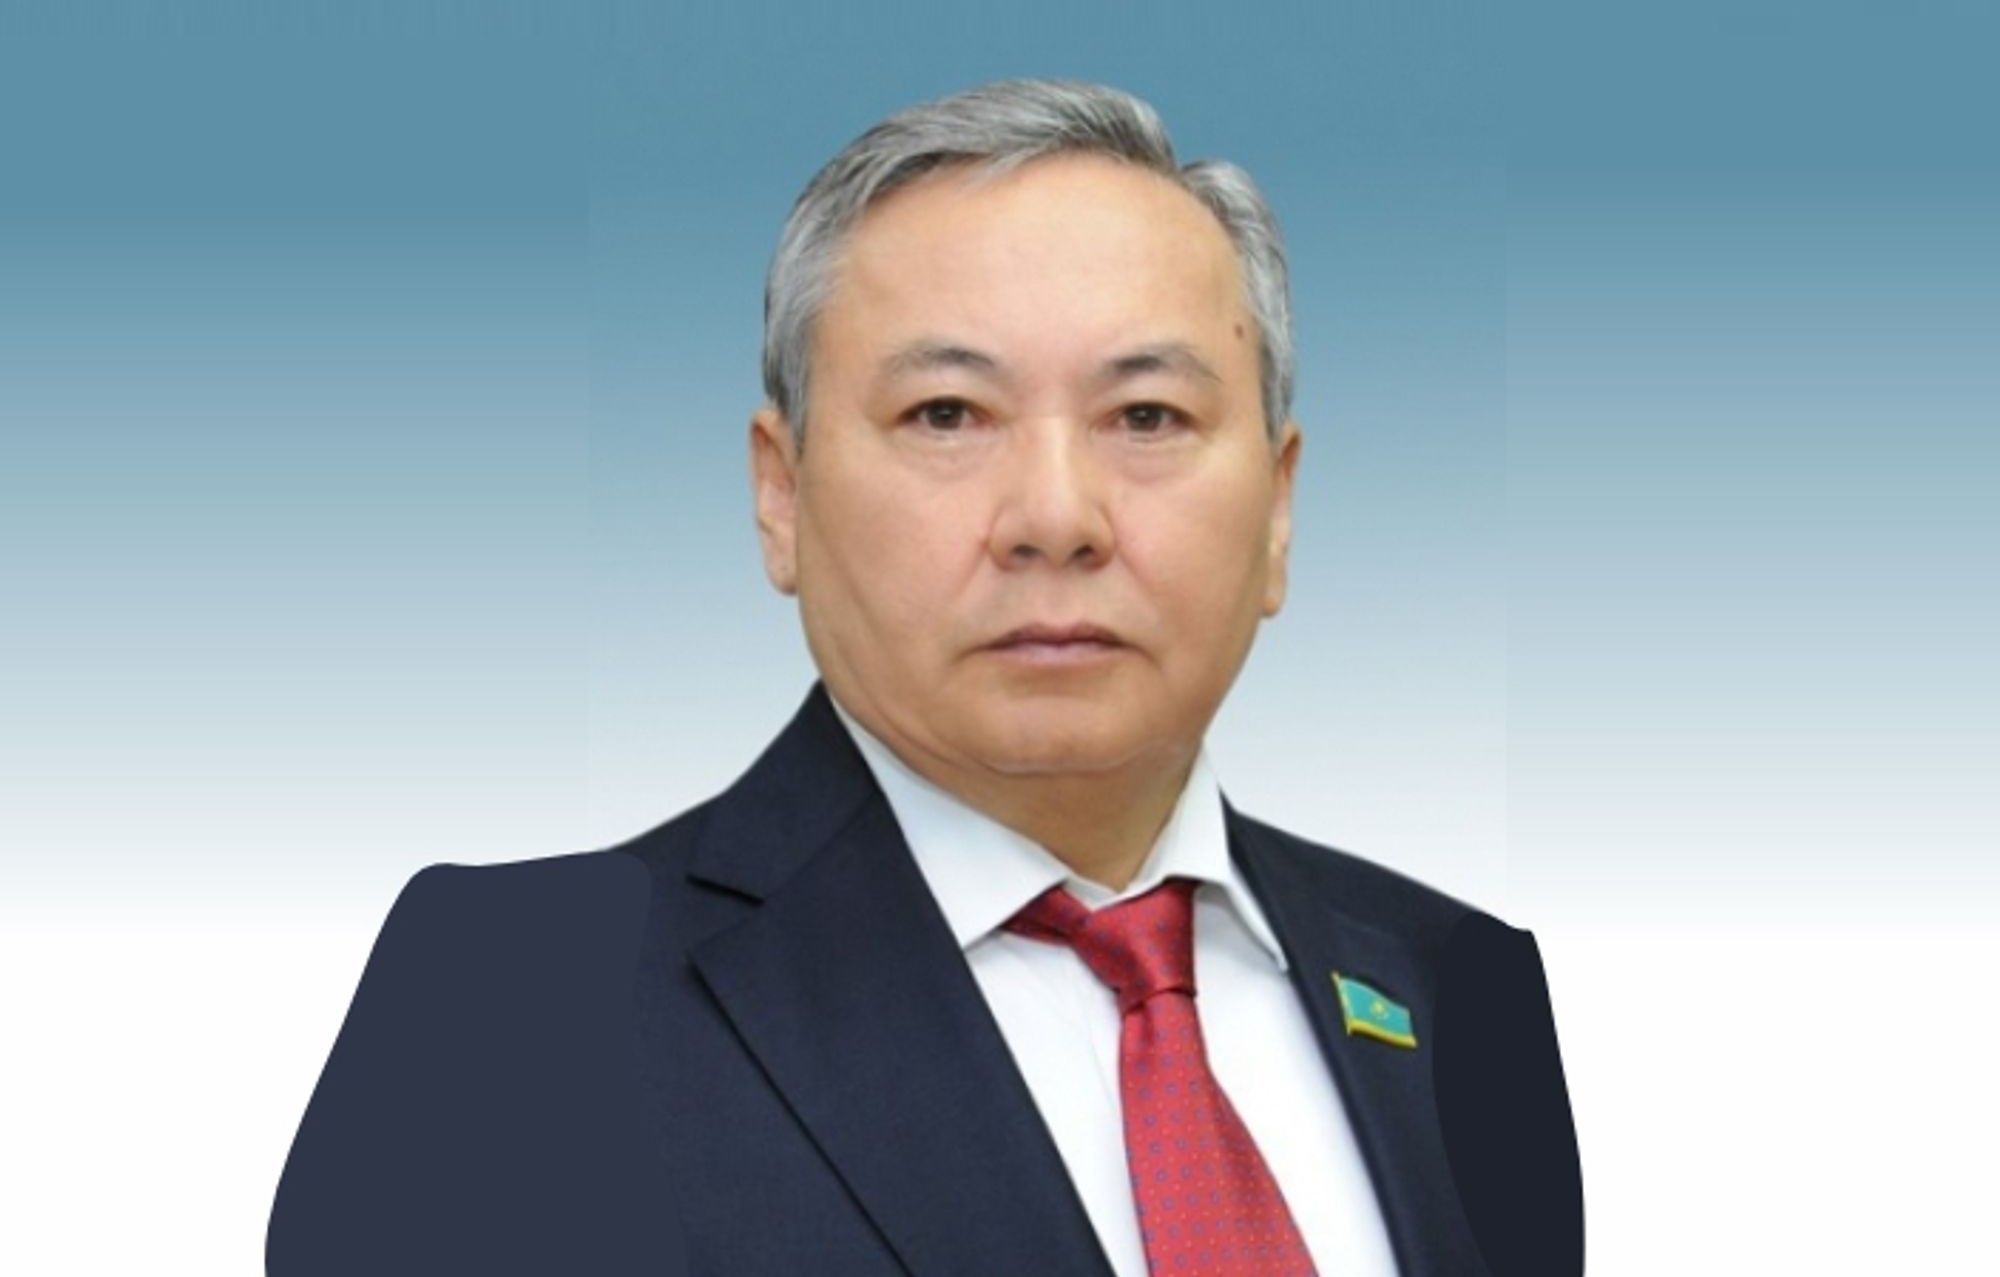 Omarkhan Oksikbayev